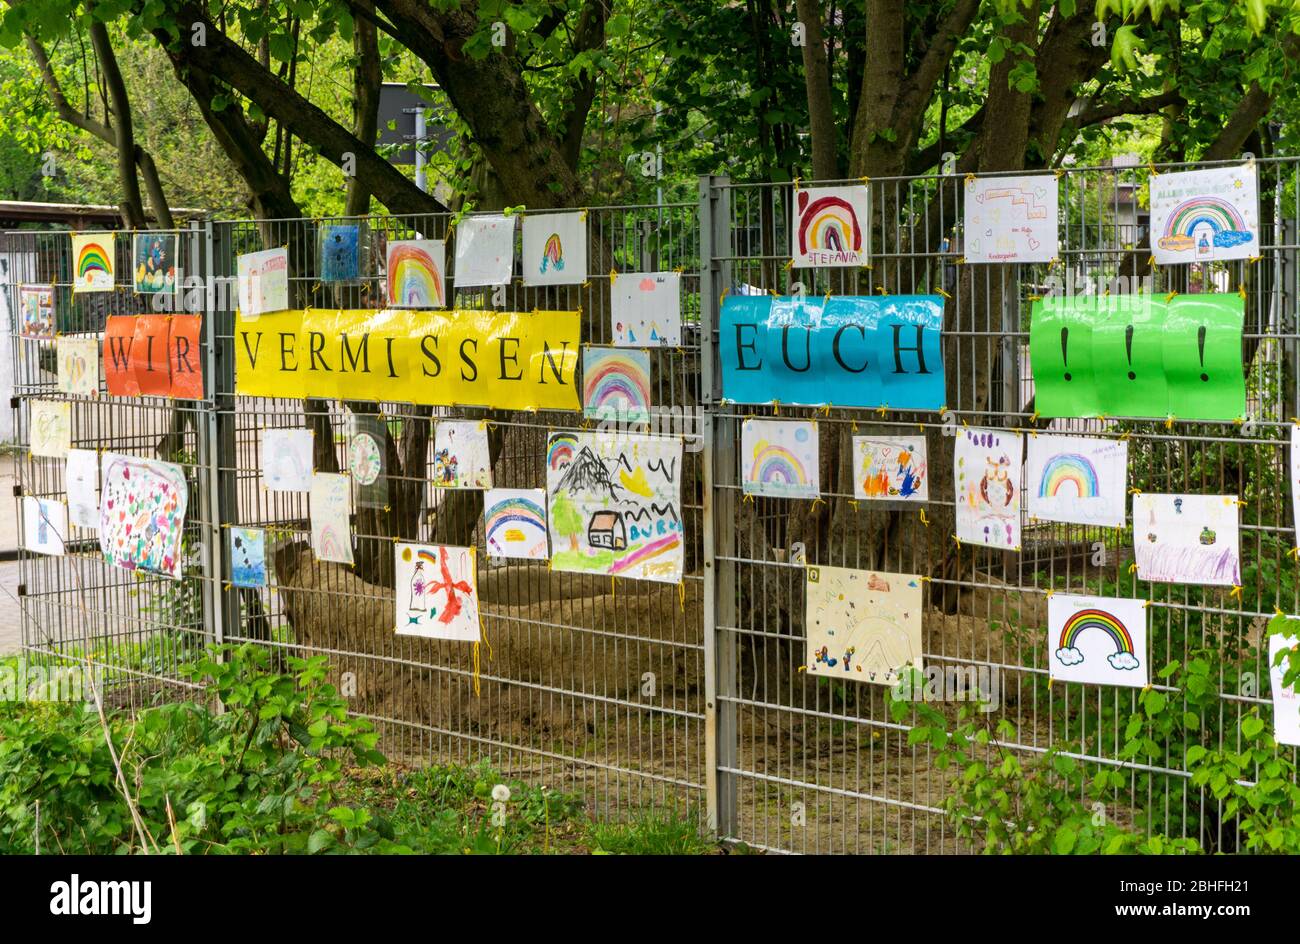 Centro municipal cerrado de guardería am MŸhlenbruch en Essen, los educadores han colgado fotografías autopintadas de los niños en una valla del centro de guardería Foto de stock